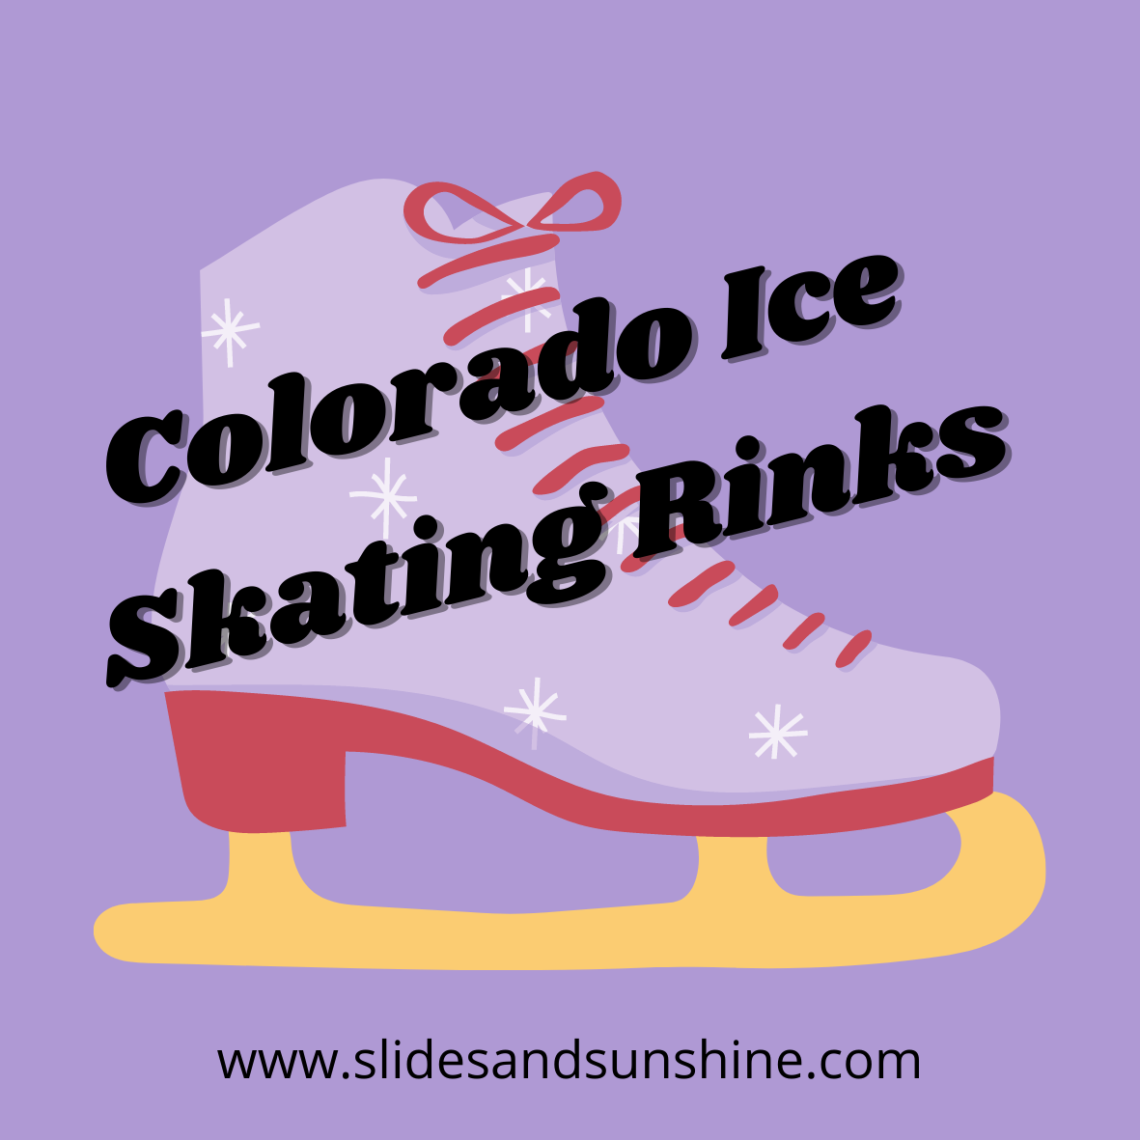 Colorado Ice Skating Rinks